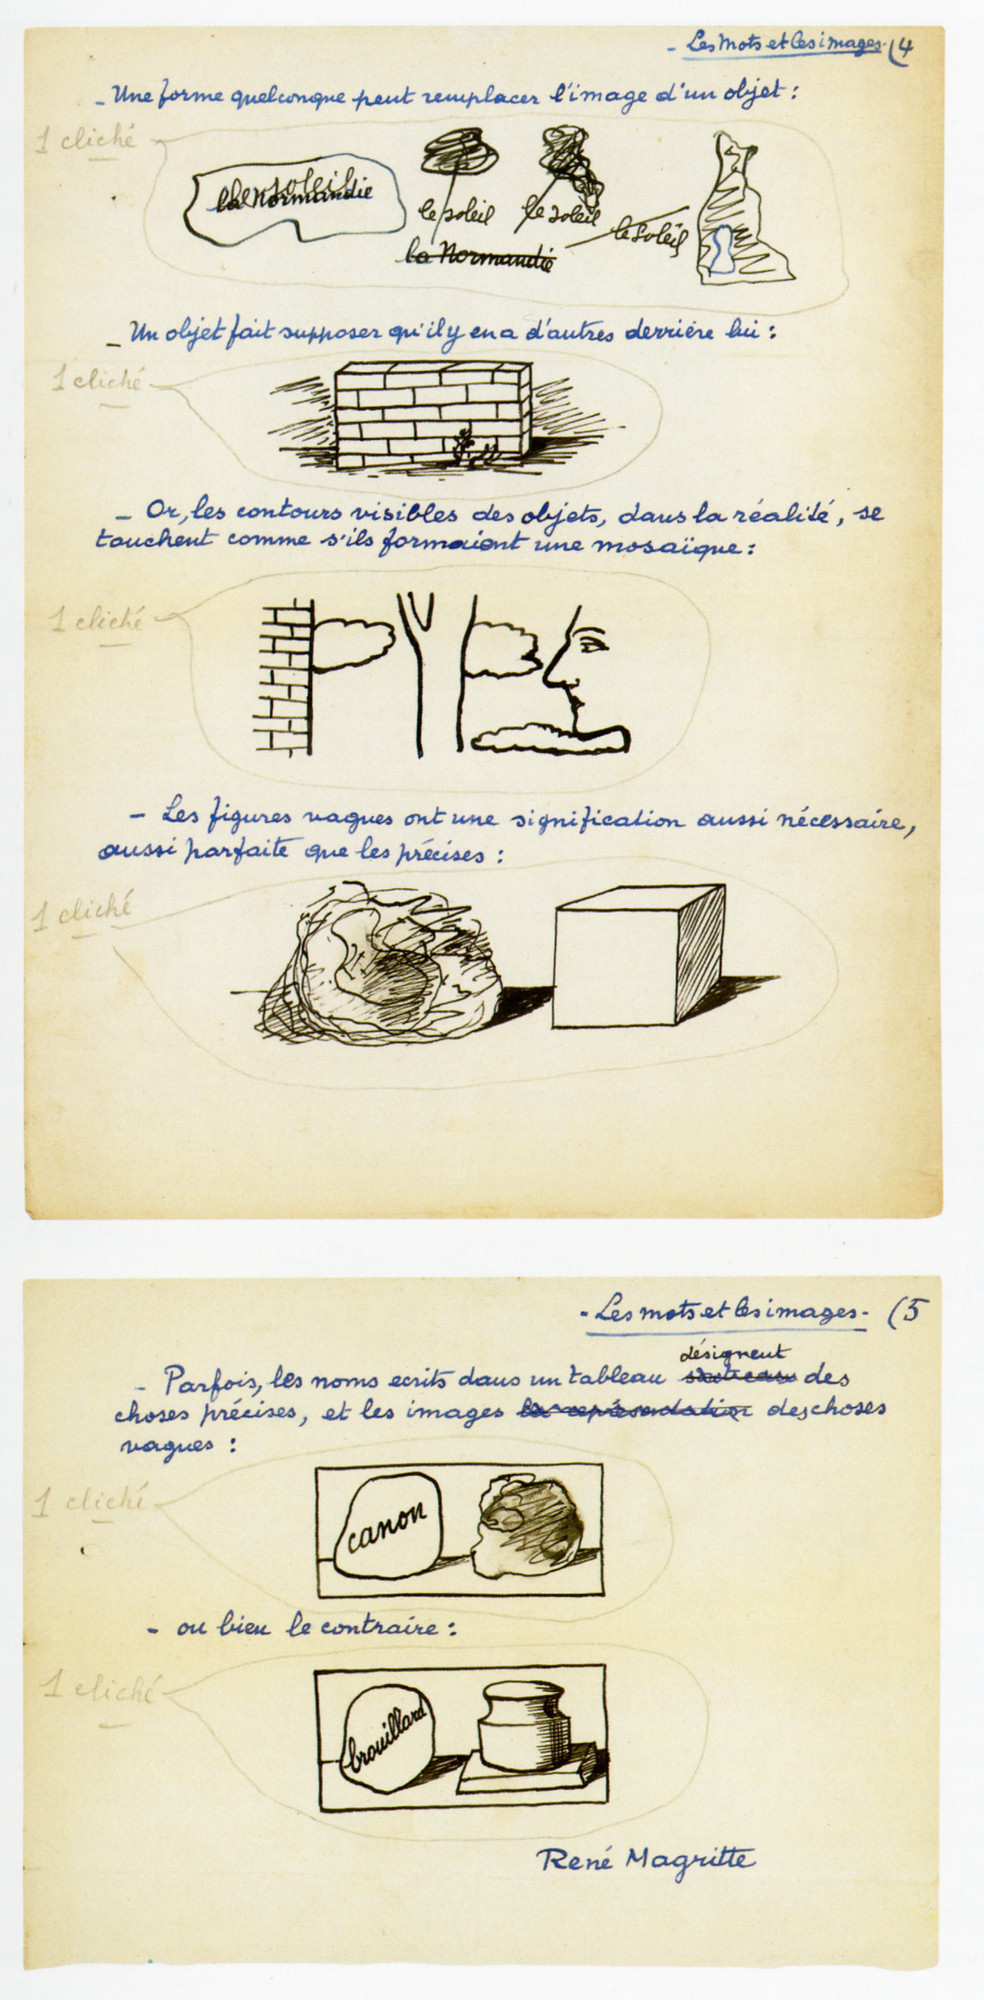 René Magritte. _Various case materials related to La Révolution surréaliste_ (December 1929)